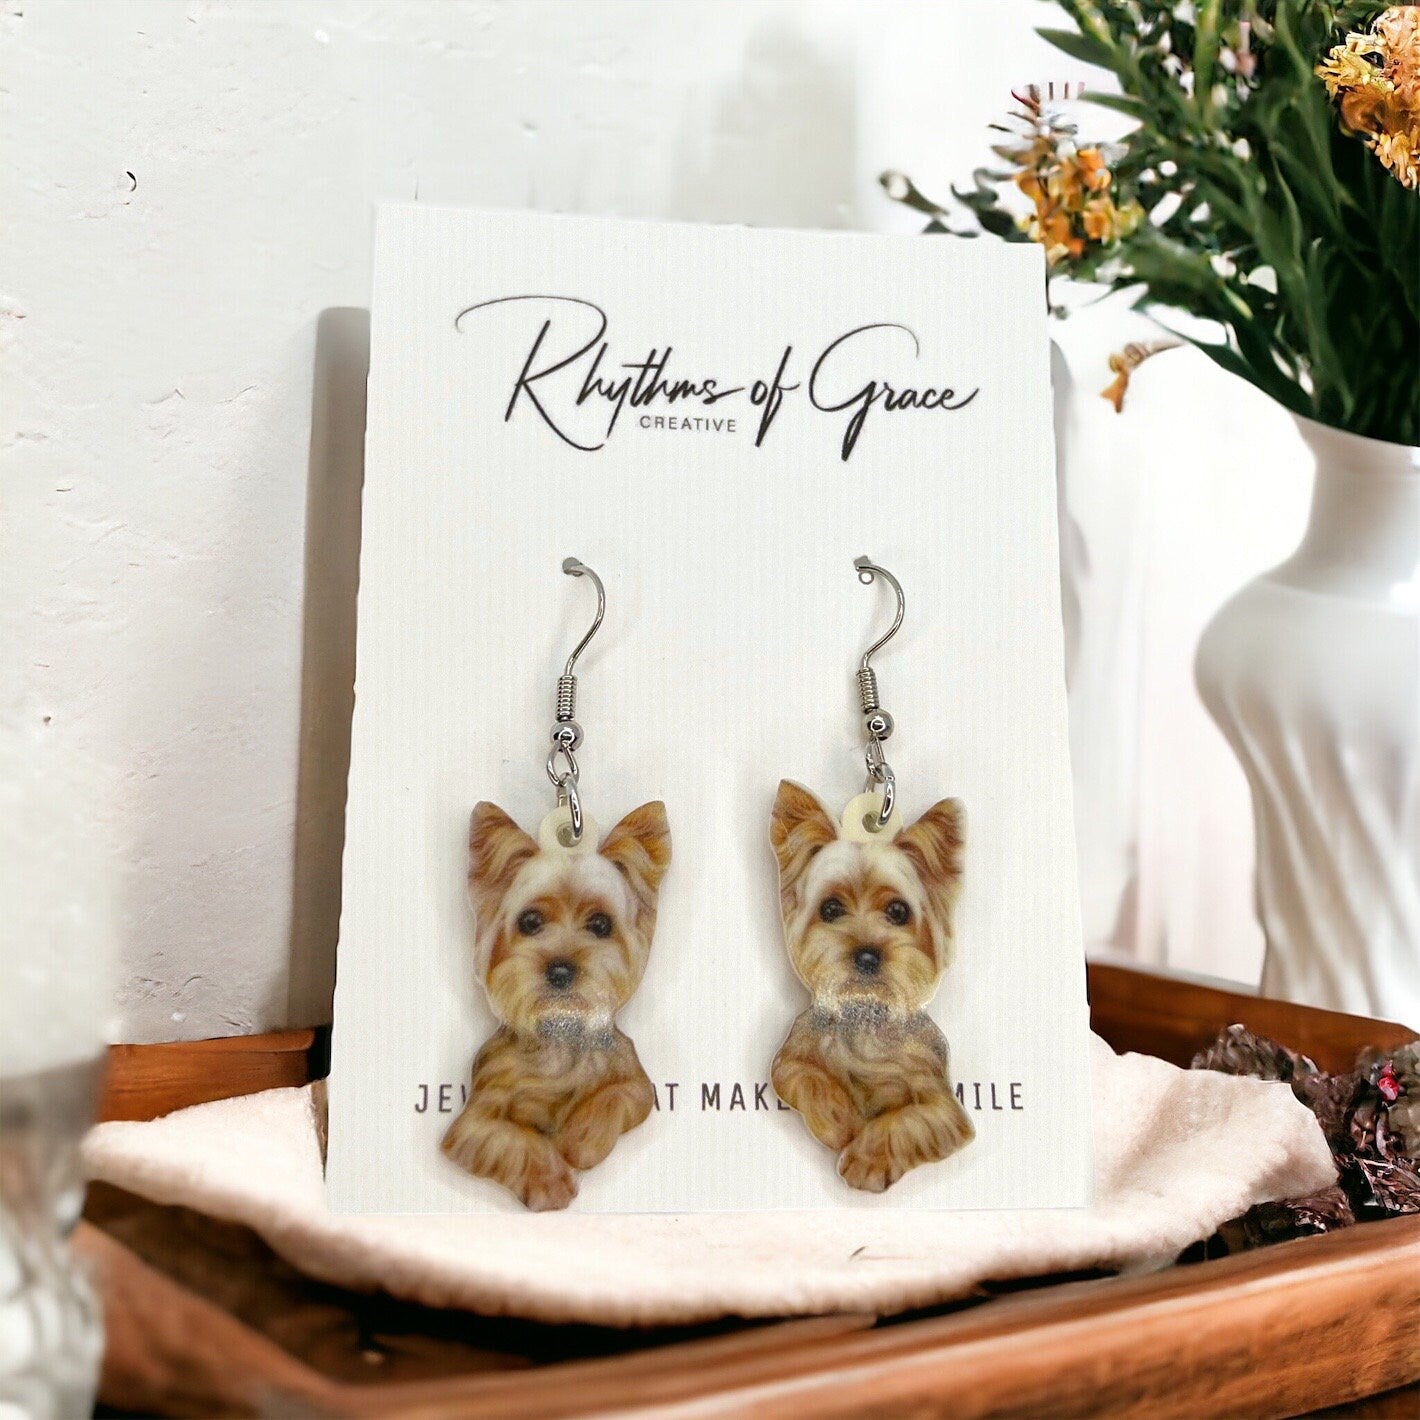 Yorkie Earrings - Dog Earrings, Yorkie Mom, Dog Jewelry, Dog Mom, Yorkie Jewelry, Dog Accessories, Puppy Earrings, Yorkie Accessories